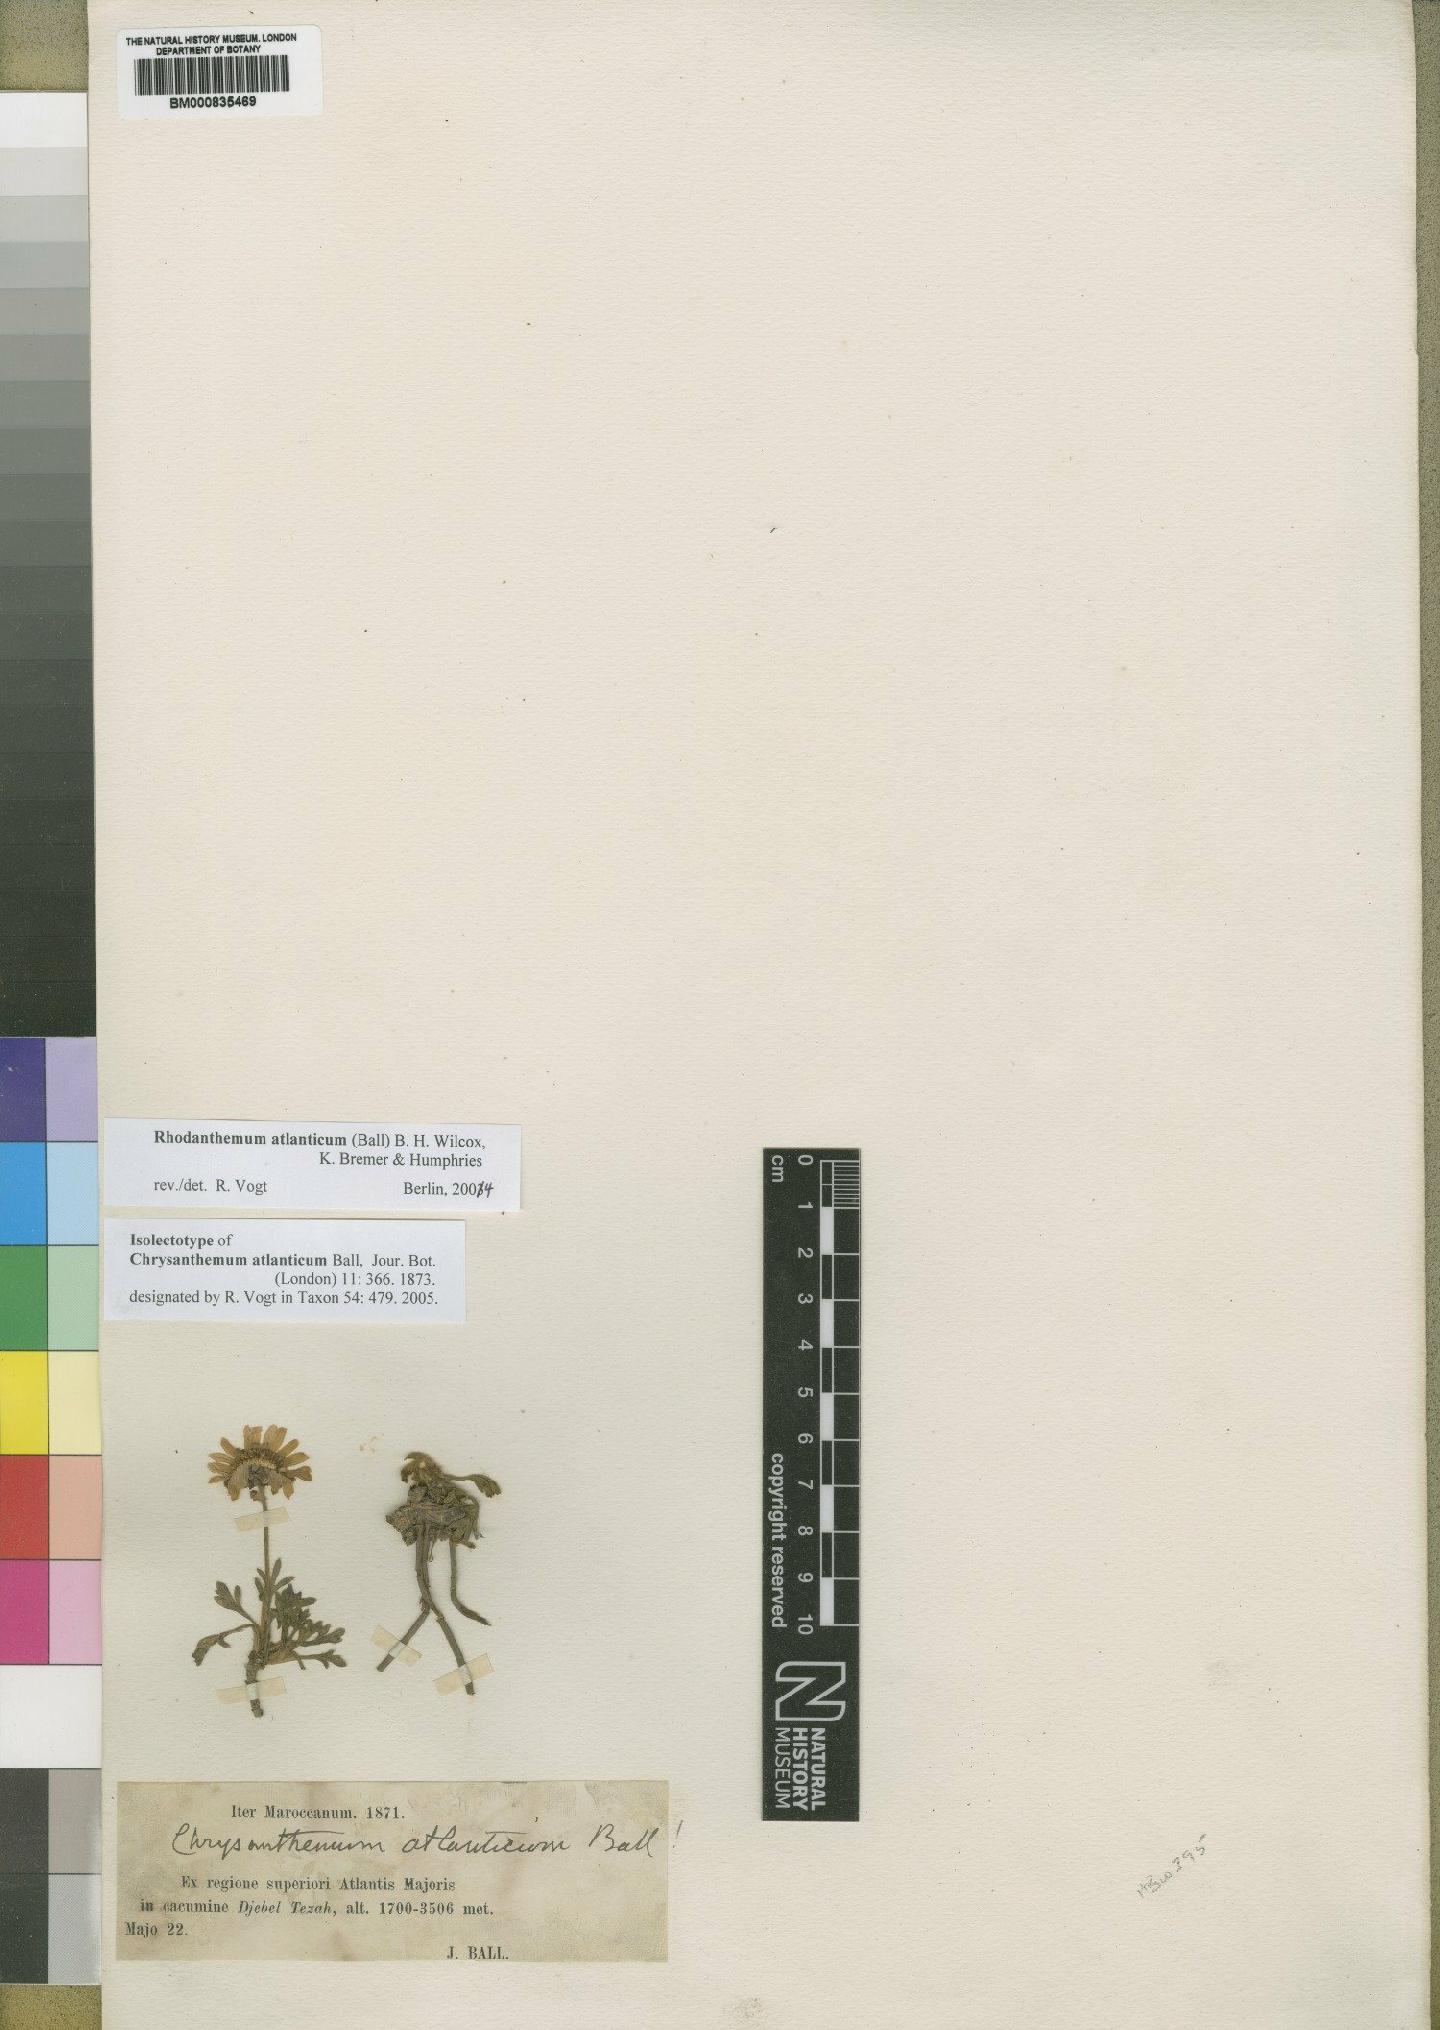 To NHMUK collection (Chrysanthemum atlanticum Ball; Type; NHMUK:ecatalogue:4529500)